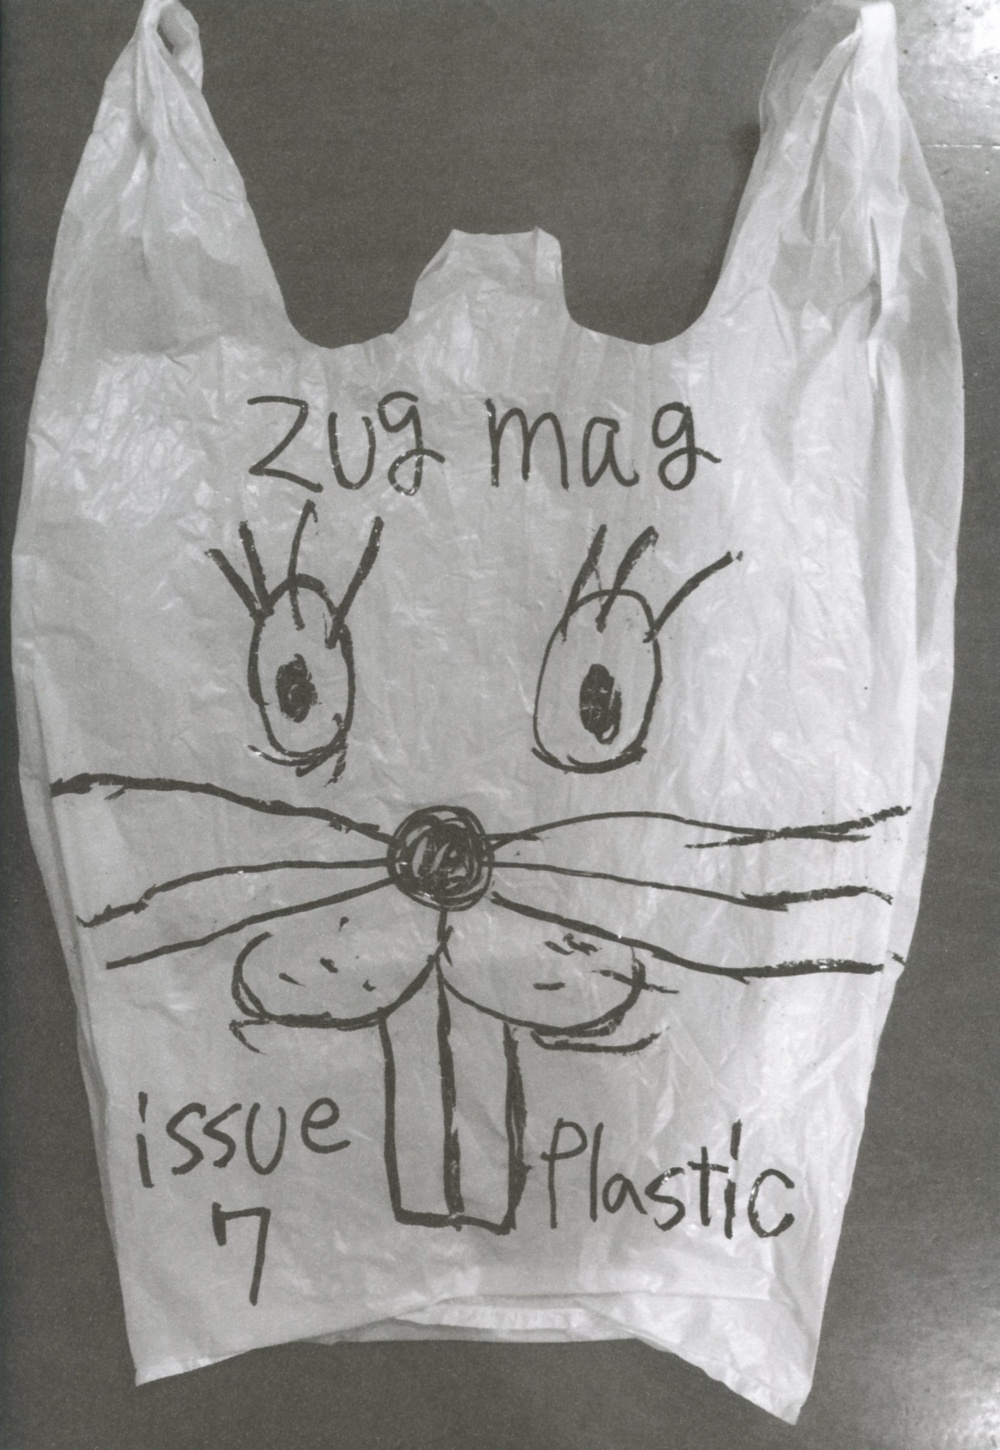 Zug Magazine #7: Plastic